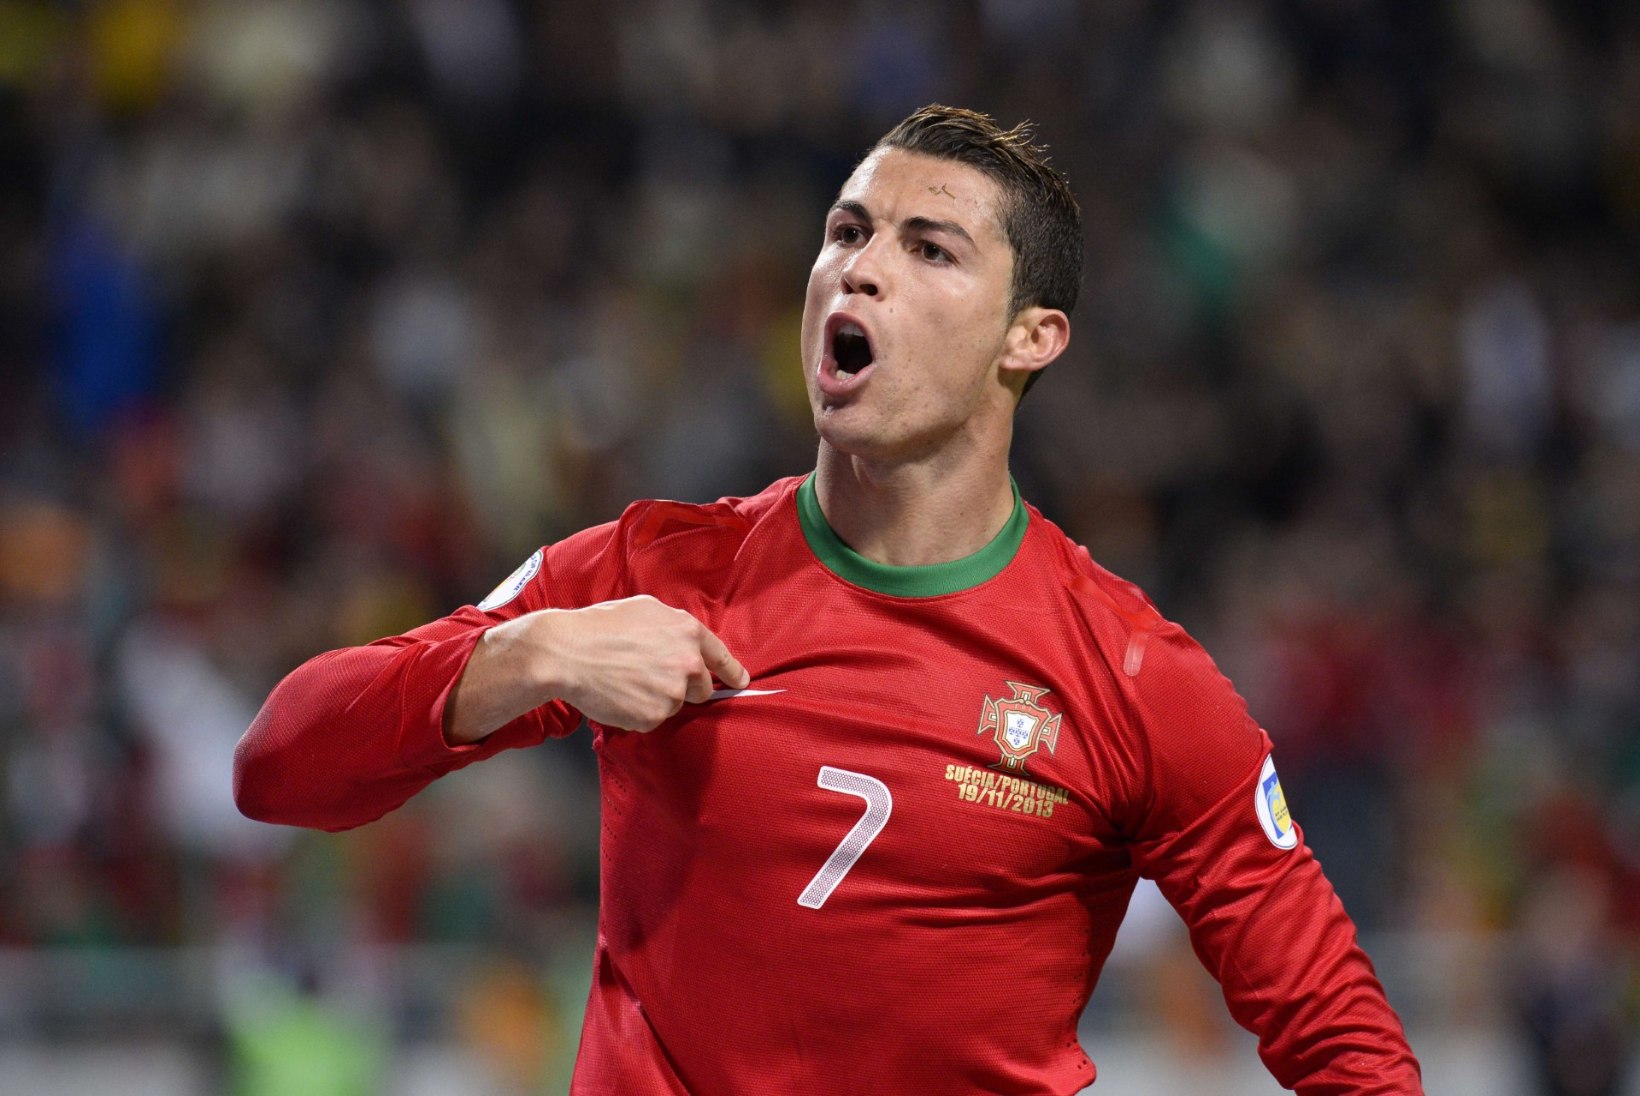 AMETLIK: maailma parimaks jalgpalluriks valitakse Ronaldo, Messi või Ribery